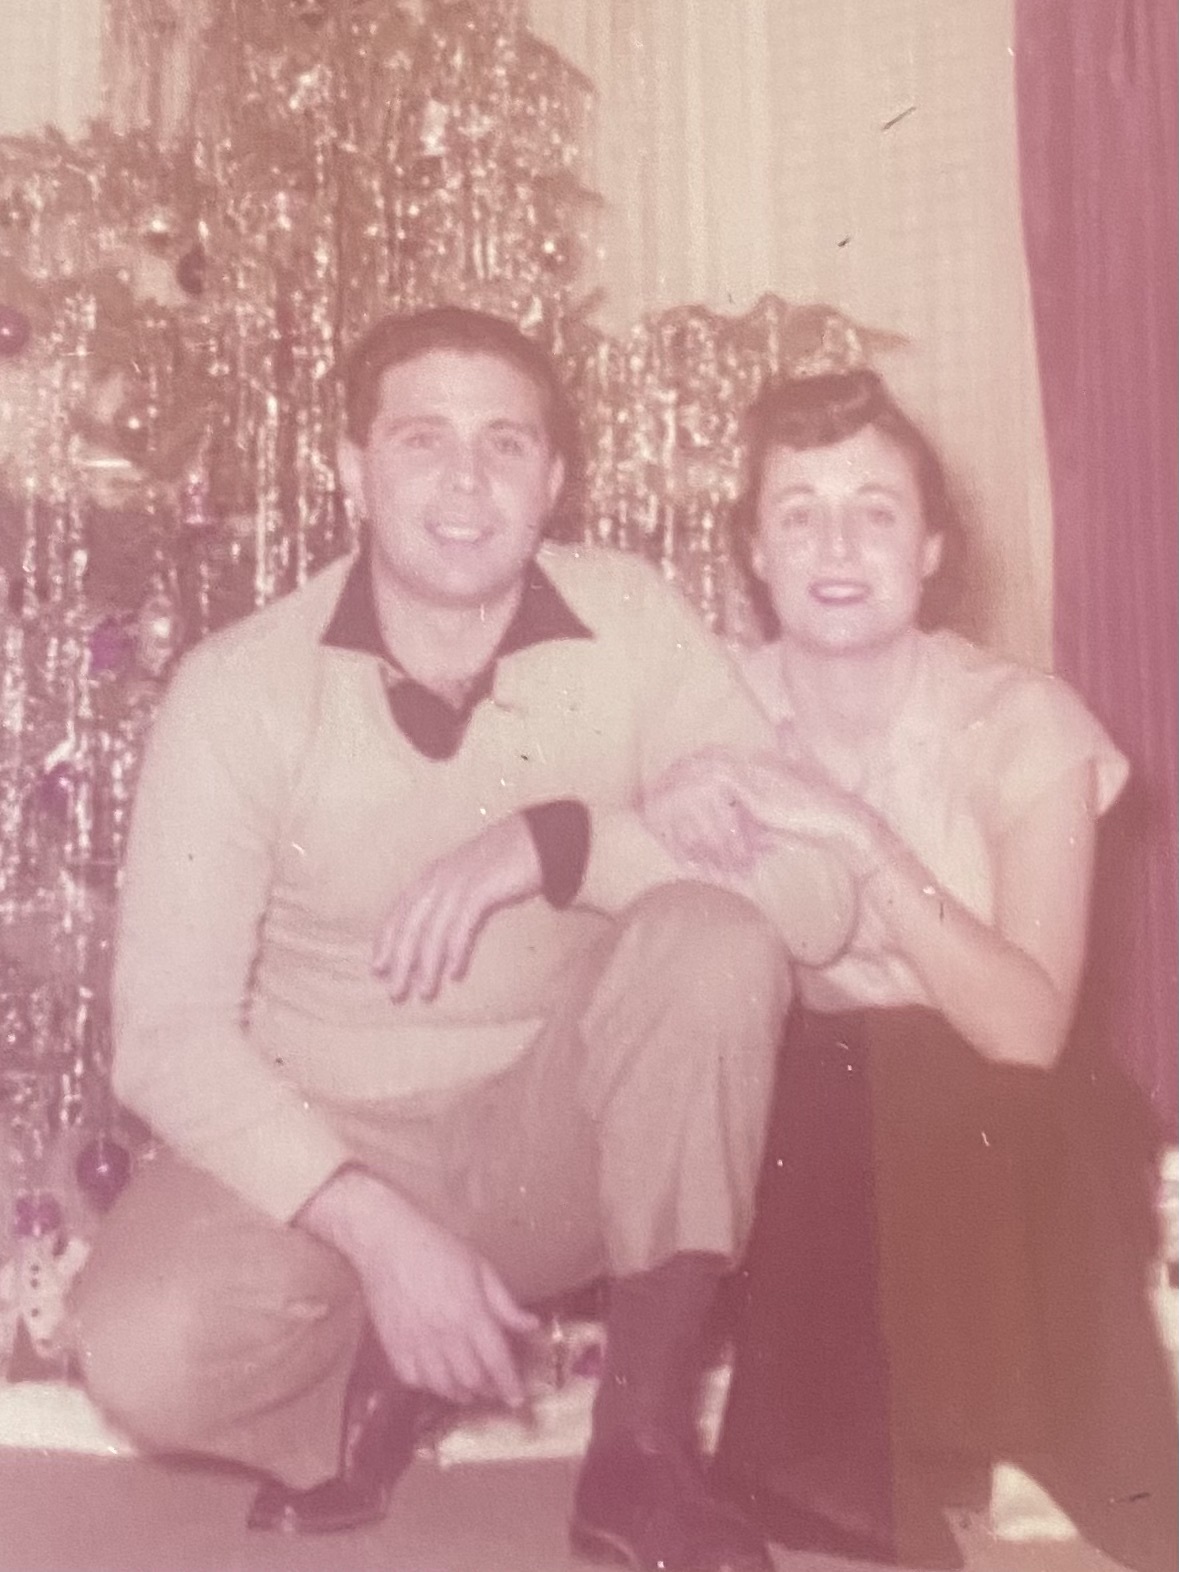 Pat DeRosa and his wife, Constance DeRosa.